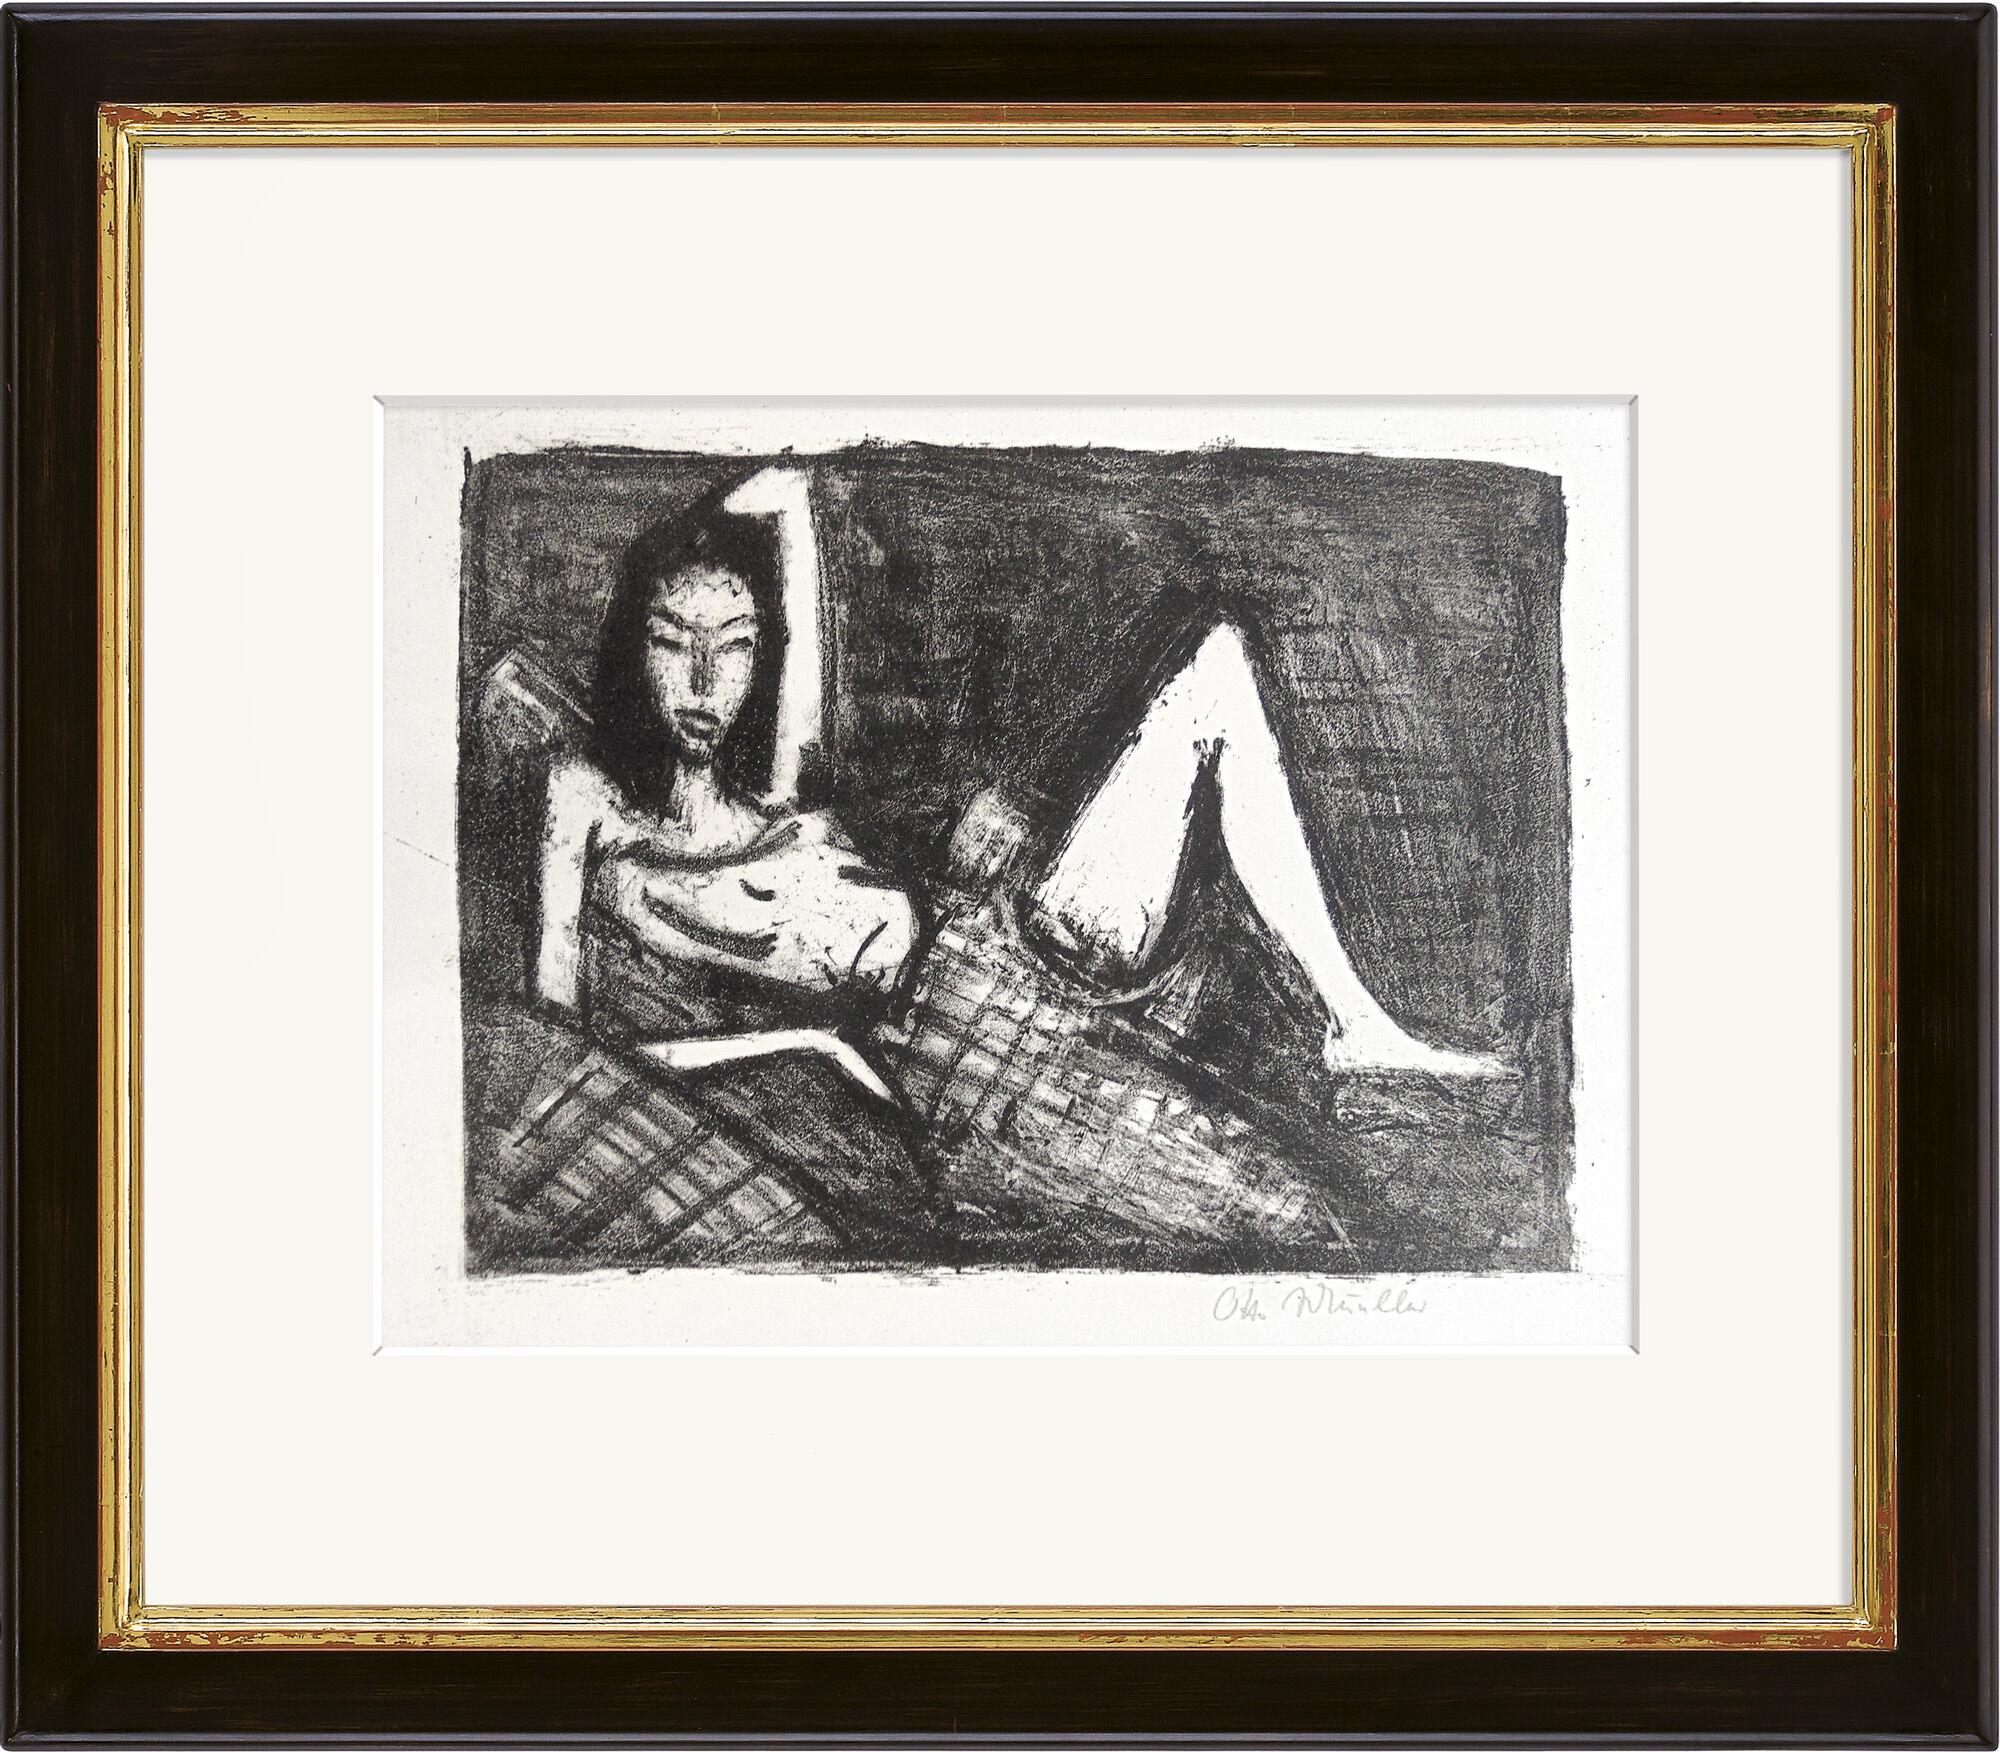 Beeld "Meisje op de bank" (1921/22) von Otto Mueller